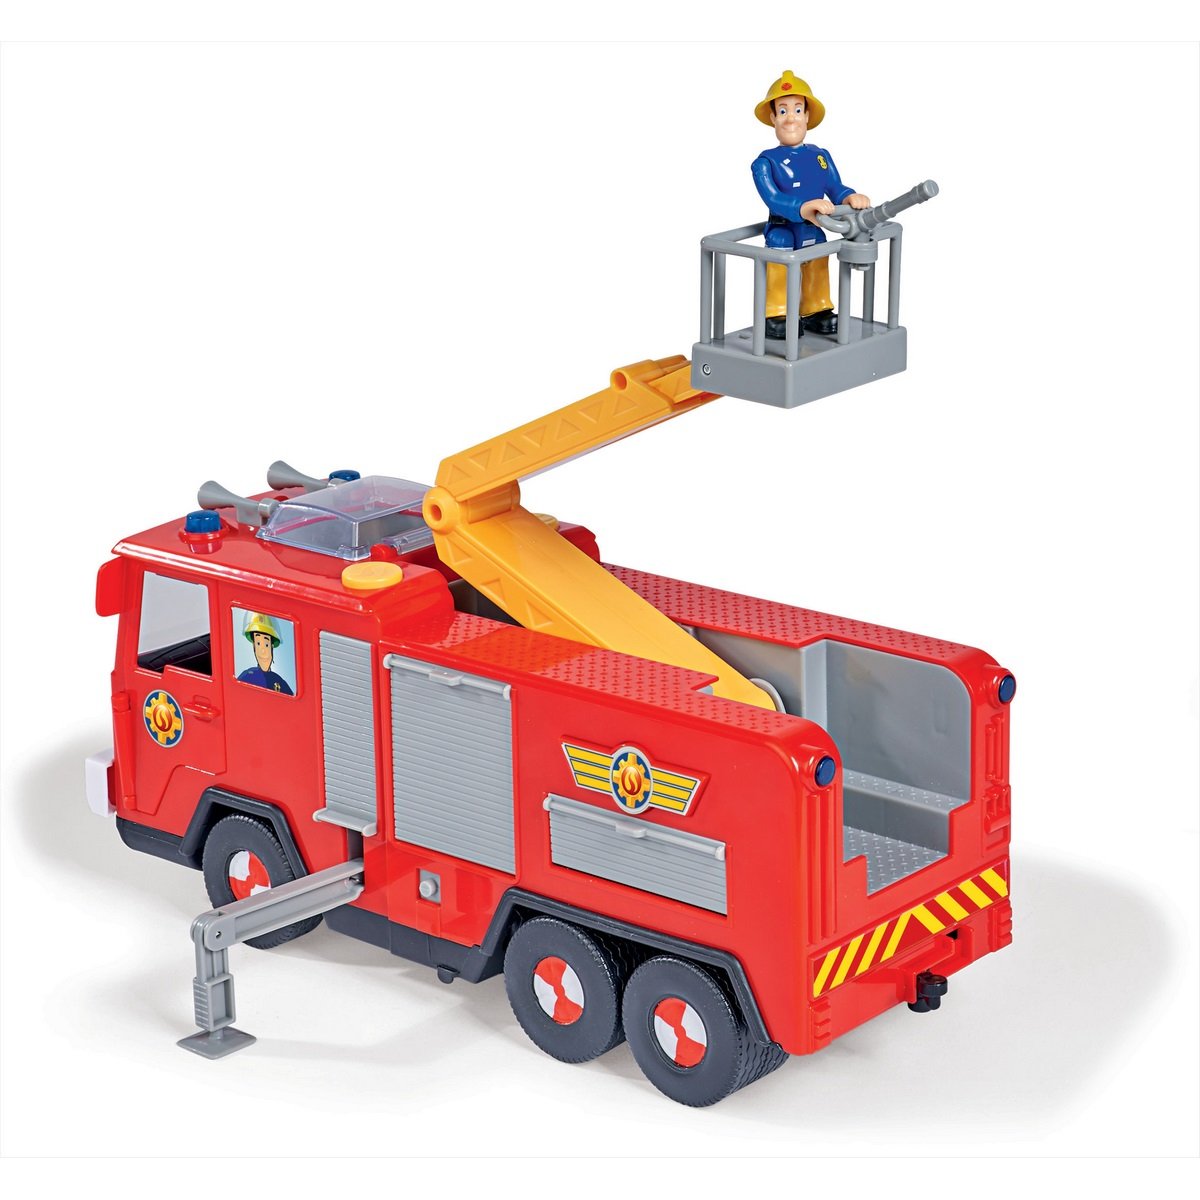  Sam le pompier / Le camion de Sam le pompier